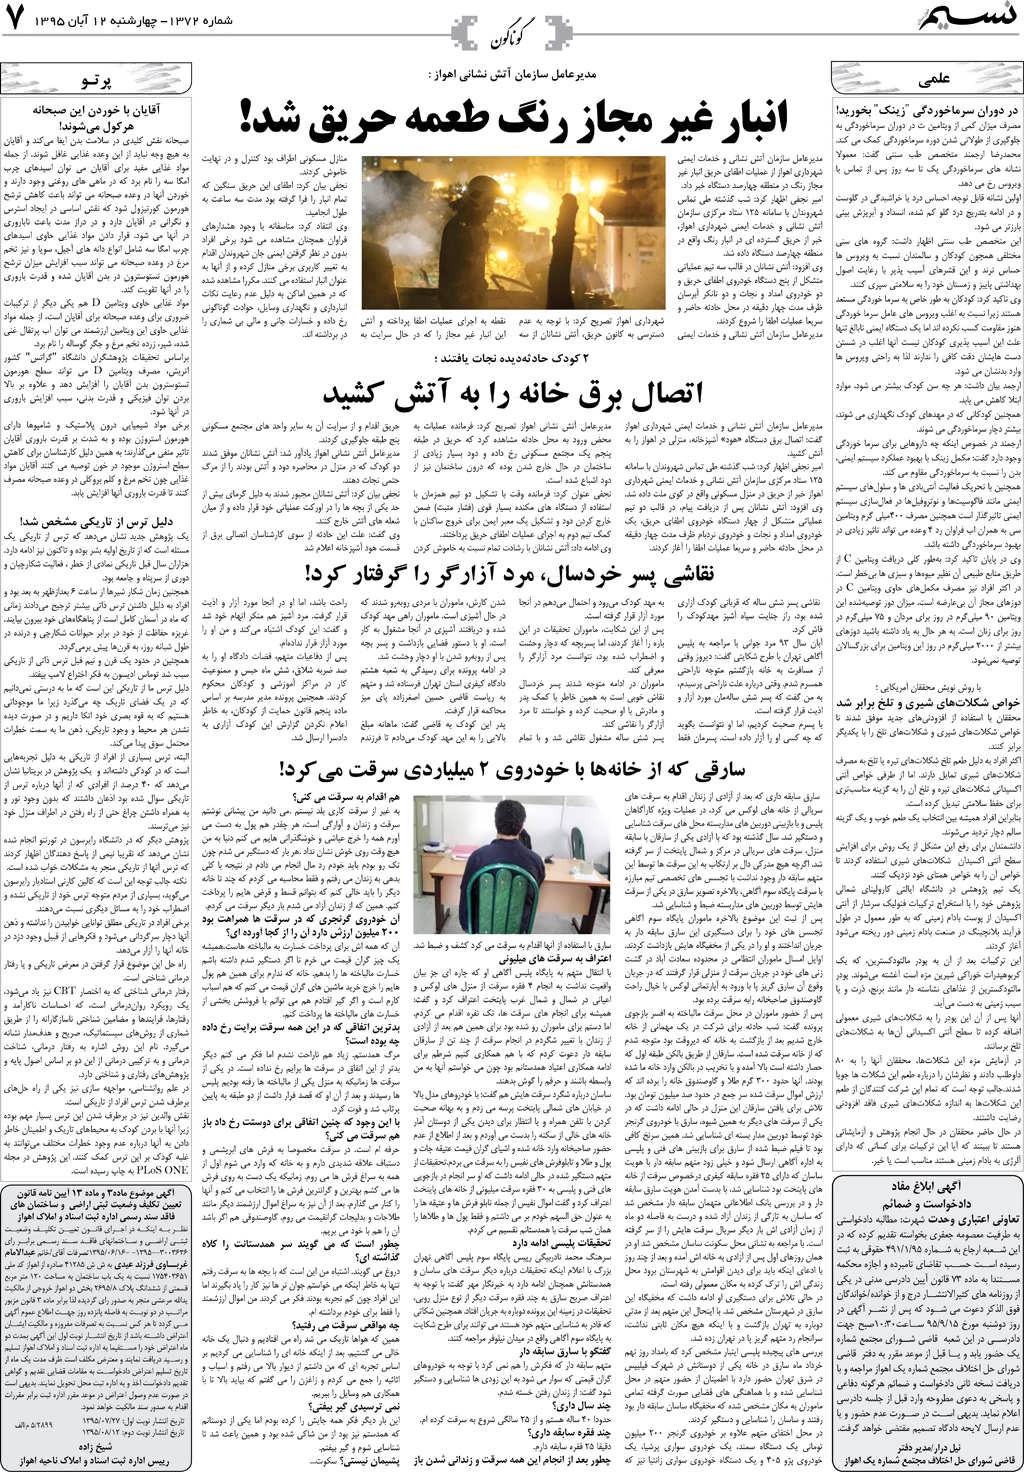 صفحه گوناگون روزنامه نسیم شماره 1372